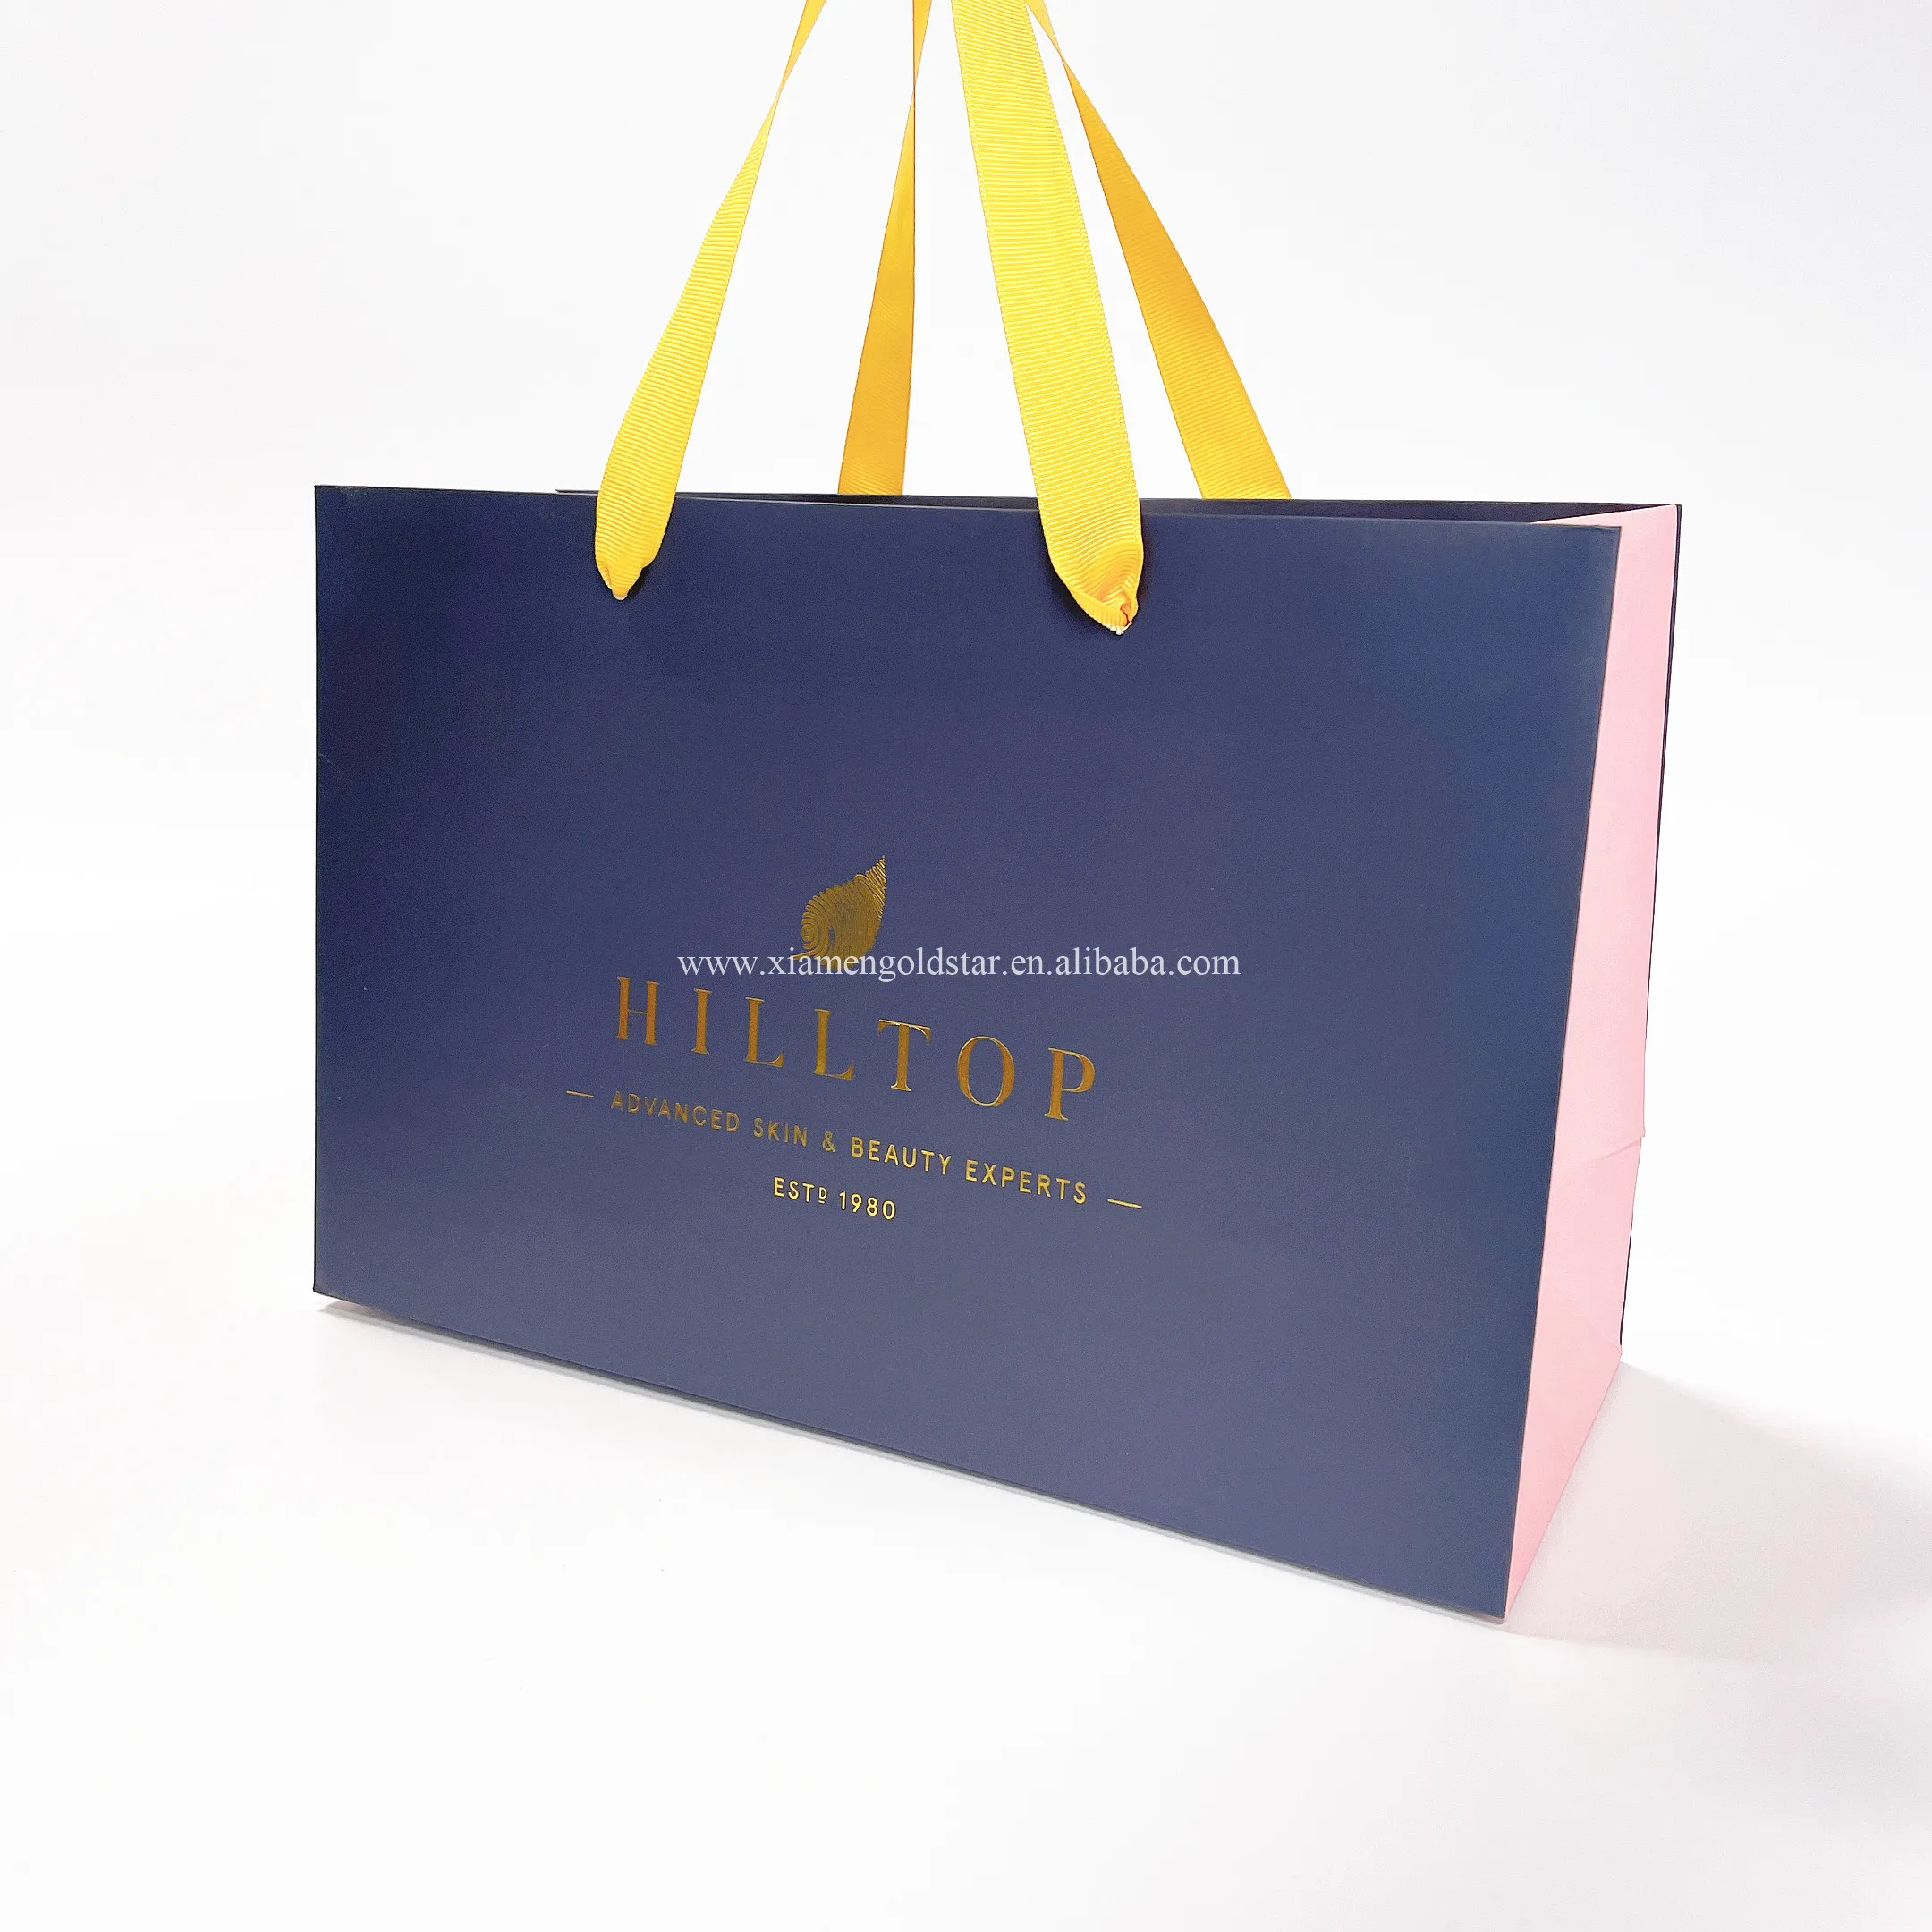 Custom di lusso nero negozio di vestiti al dettaglio confezione regalo porta borse boutique sacchetti di carta per lo shopping con il proprio logo